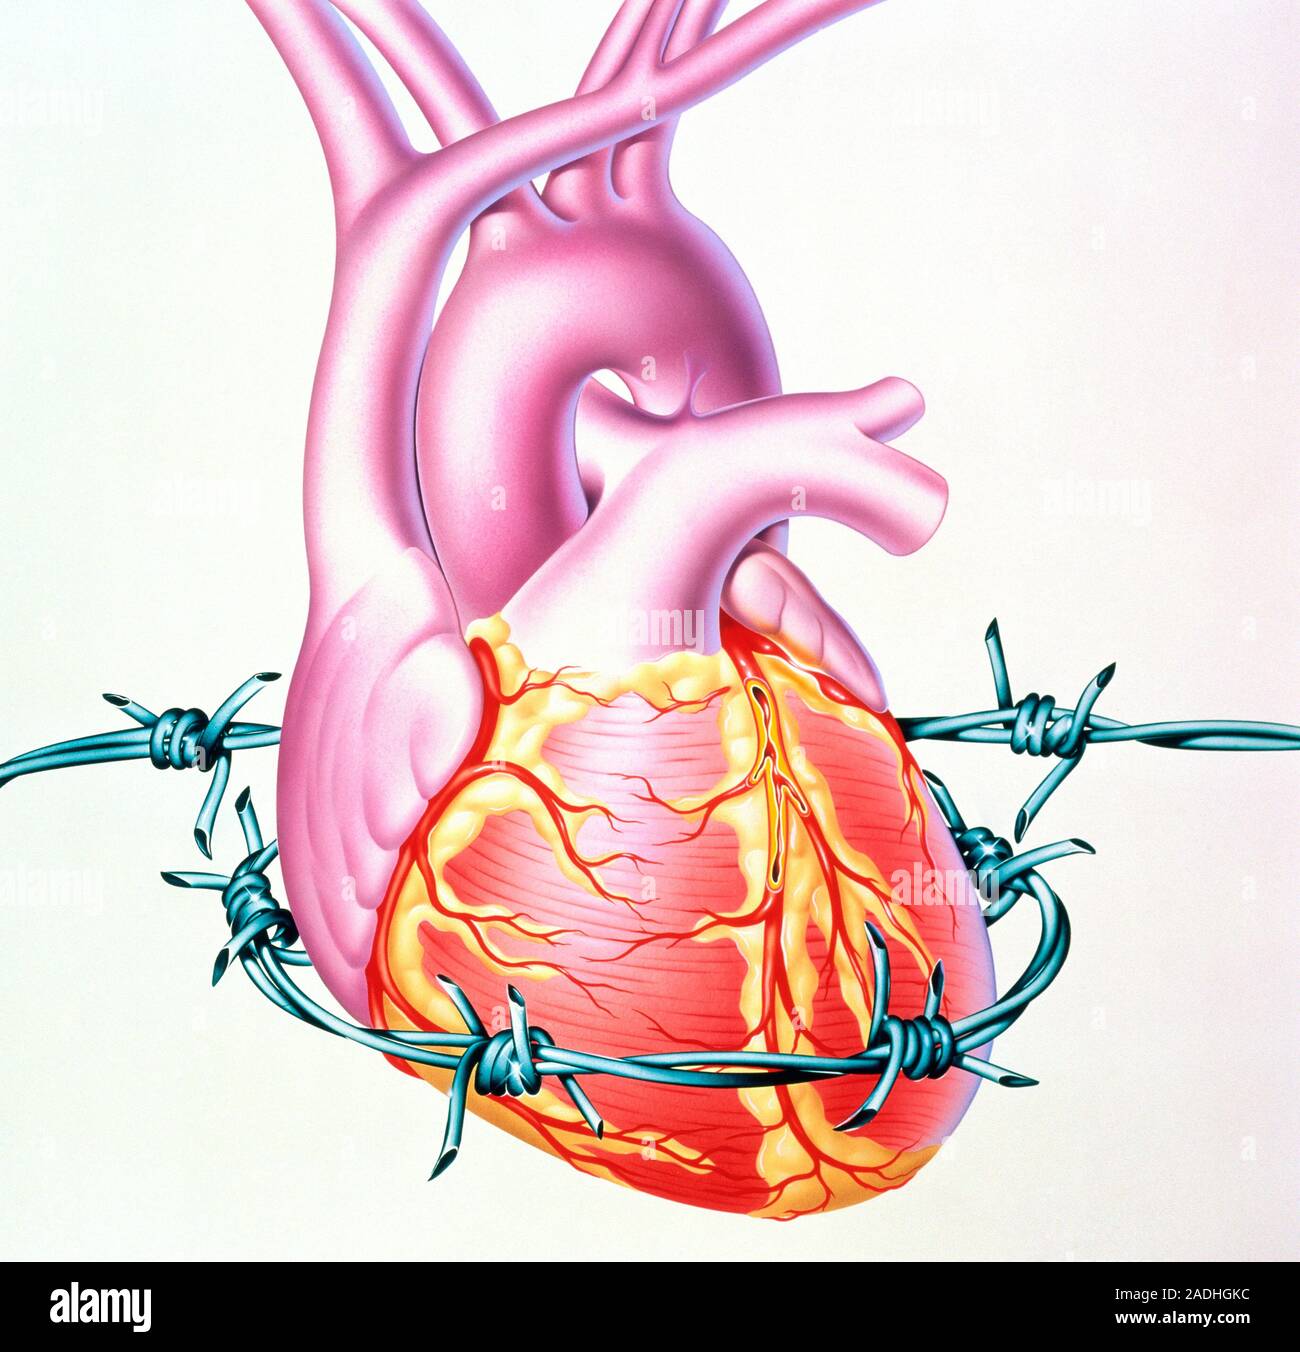 Сердечная сосудистая недостаточность шок. Ишемическая болезнь сердца стенокардия. ИБС сердца и стенокардию. Заболевания коронарных сосудов.